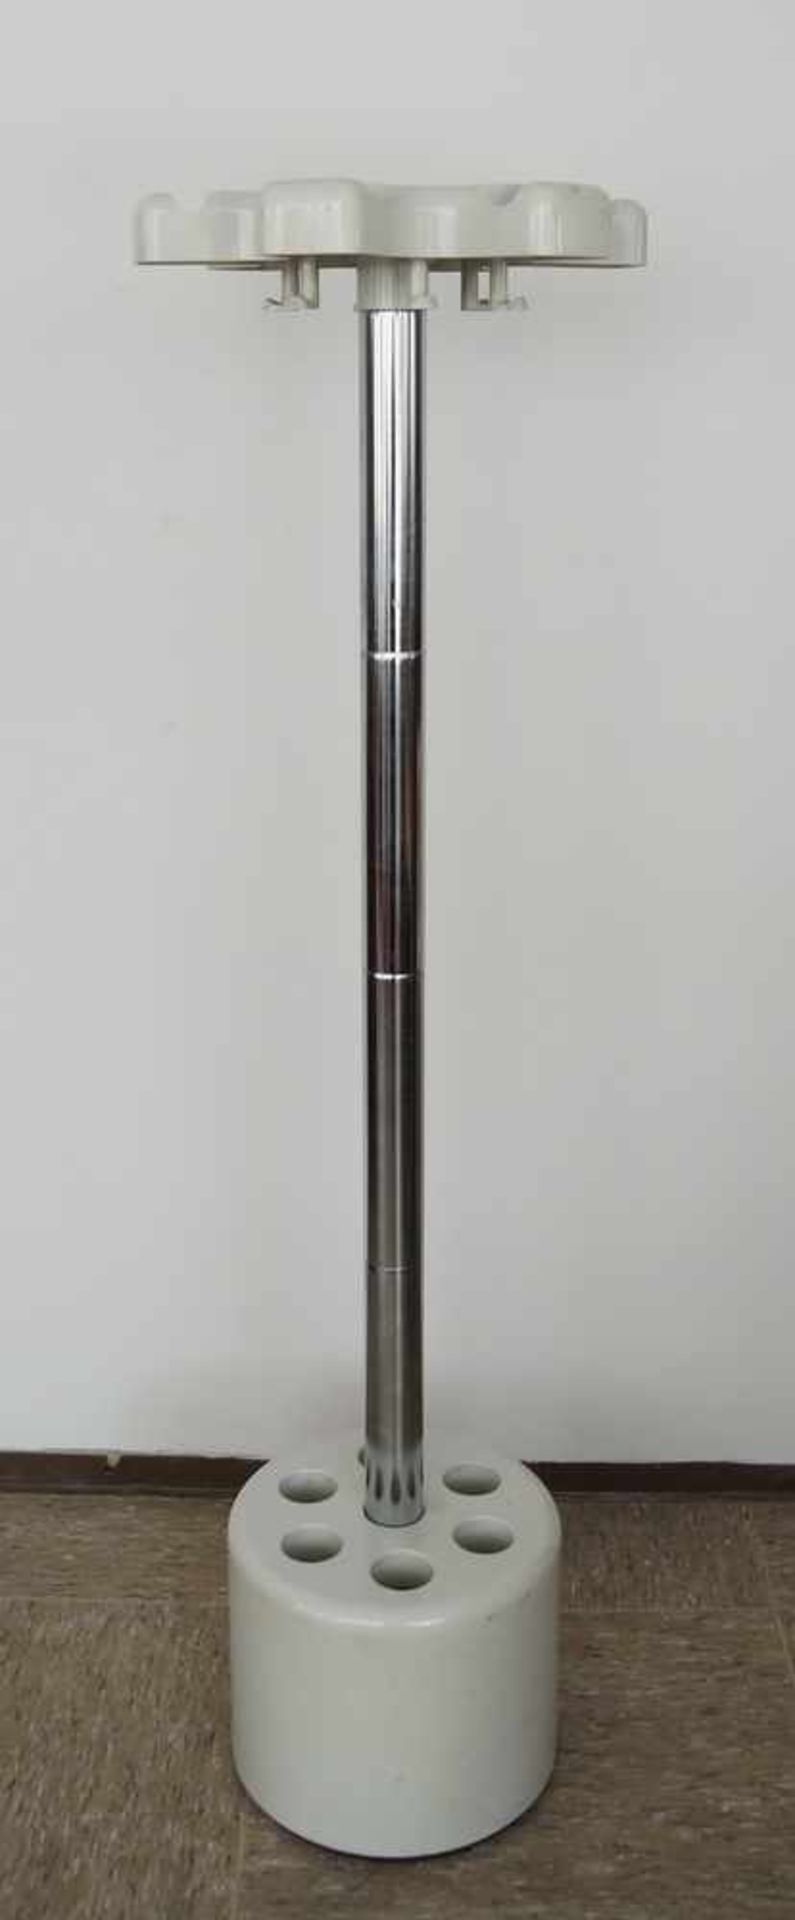 velca Standgarderobe, 70er Jahre, Italien, H 159 cm- - -24.00 % buyer's premium on the hammer - Bild 5 aus 5